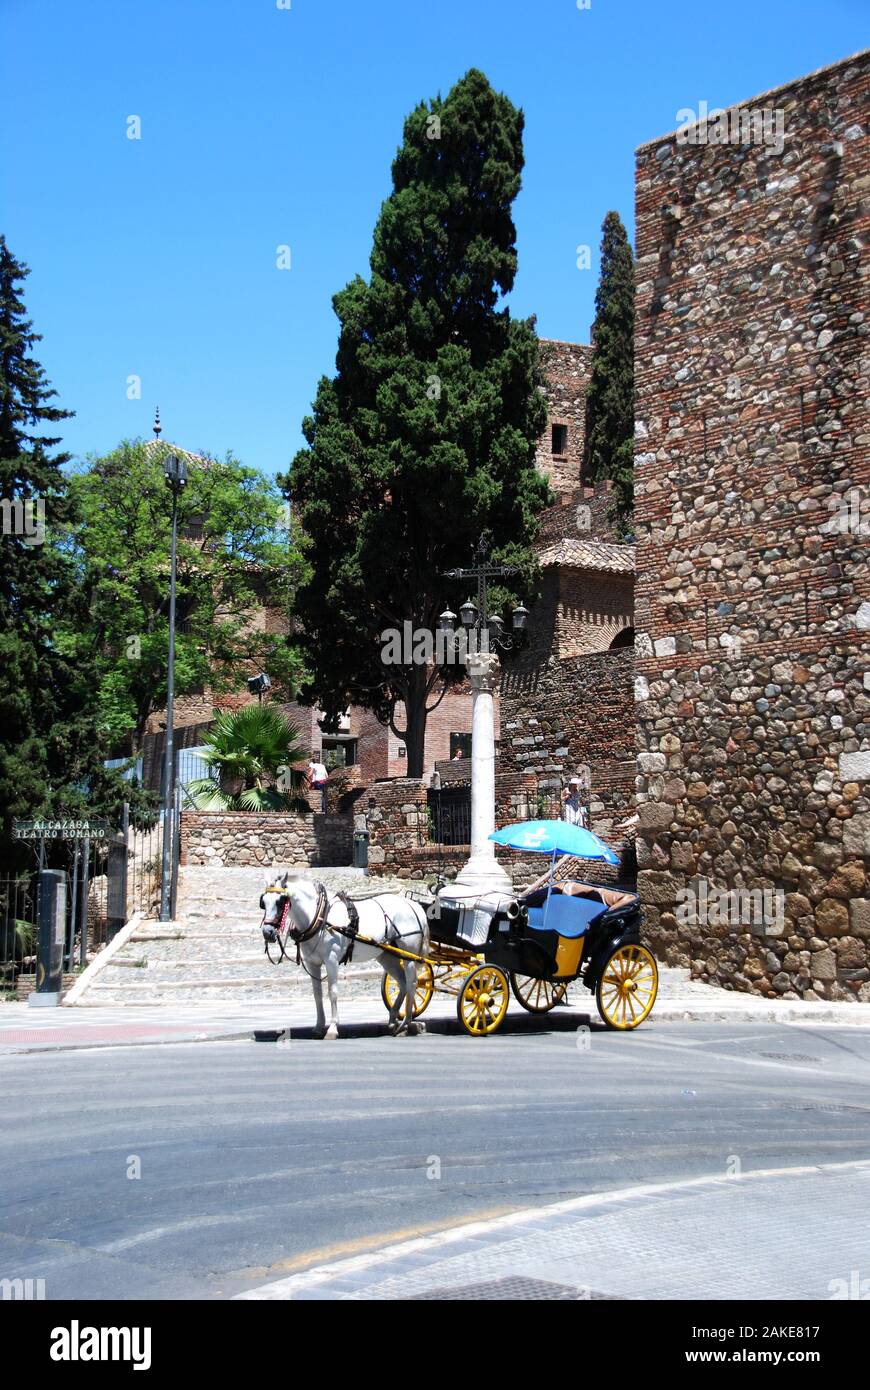 Horse drawn carriage outside entrance to the Malaga castle, Malaga, Malaga Province, Andalucia, Spain, Western Europe. Stock Photo